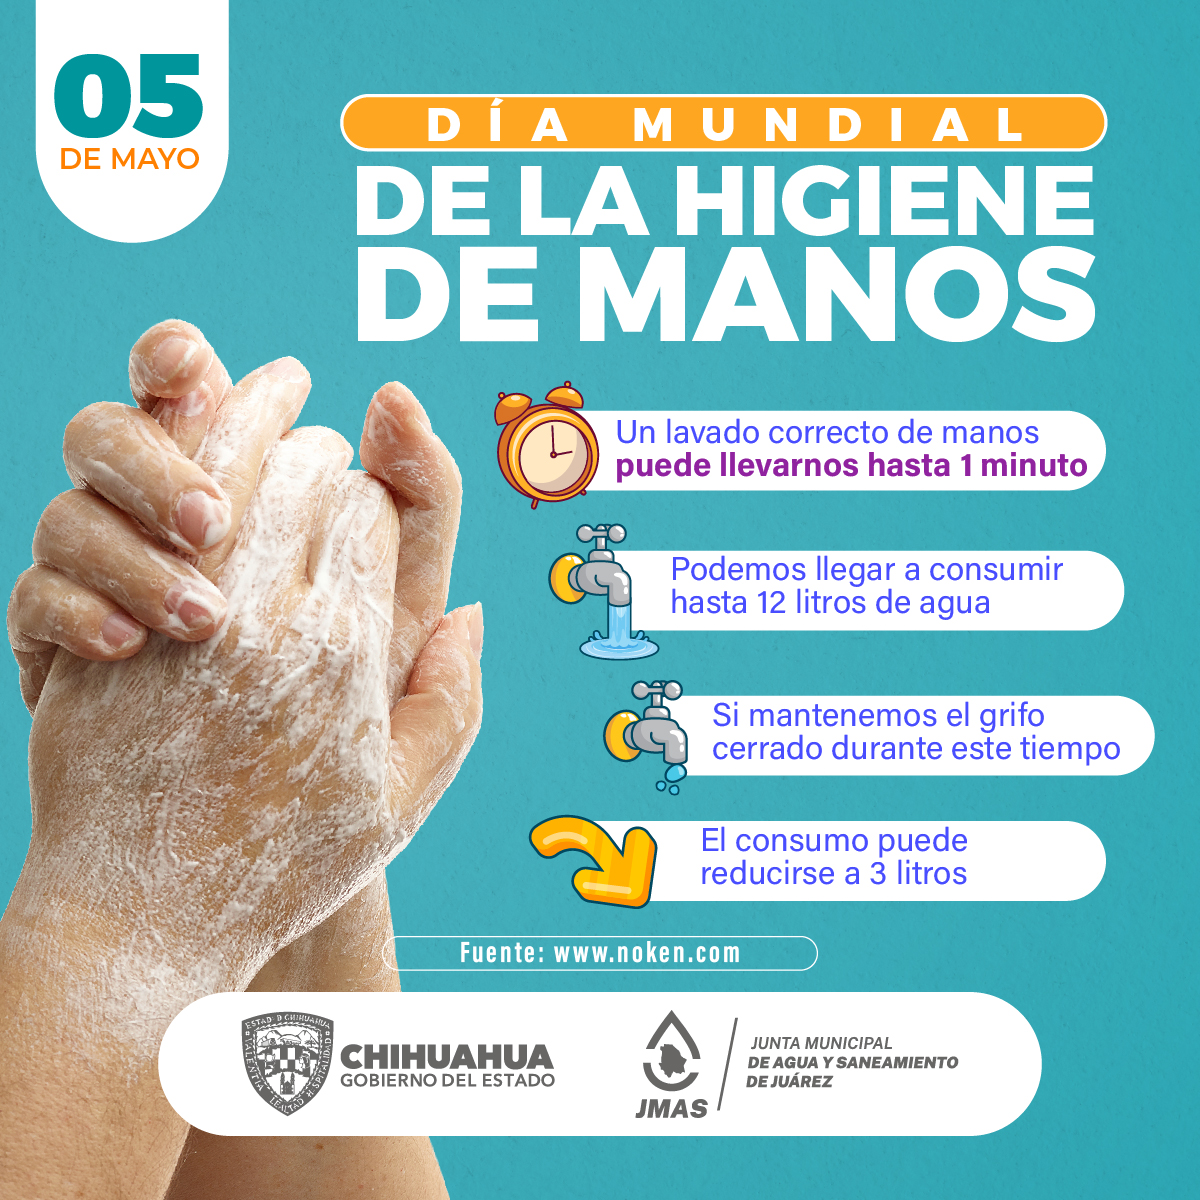 #higienedemanos